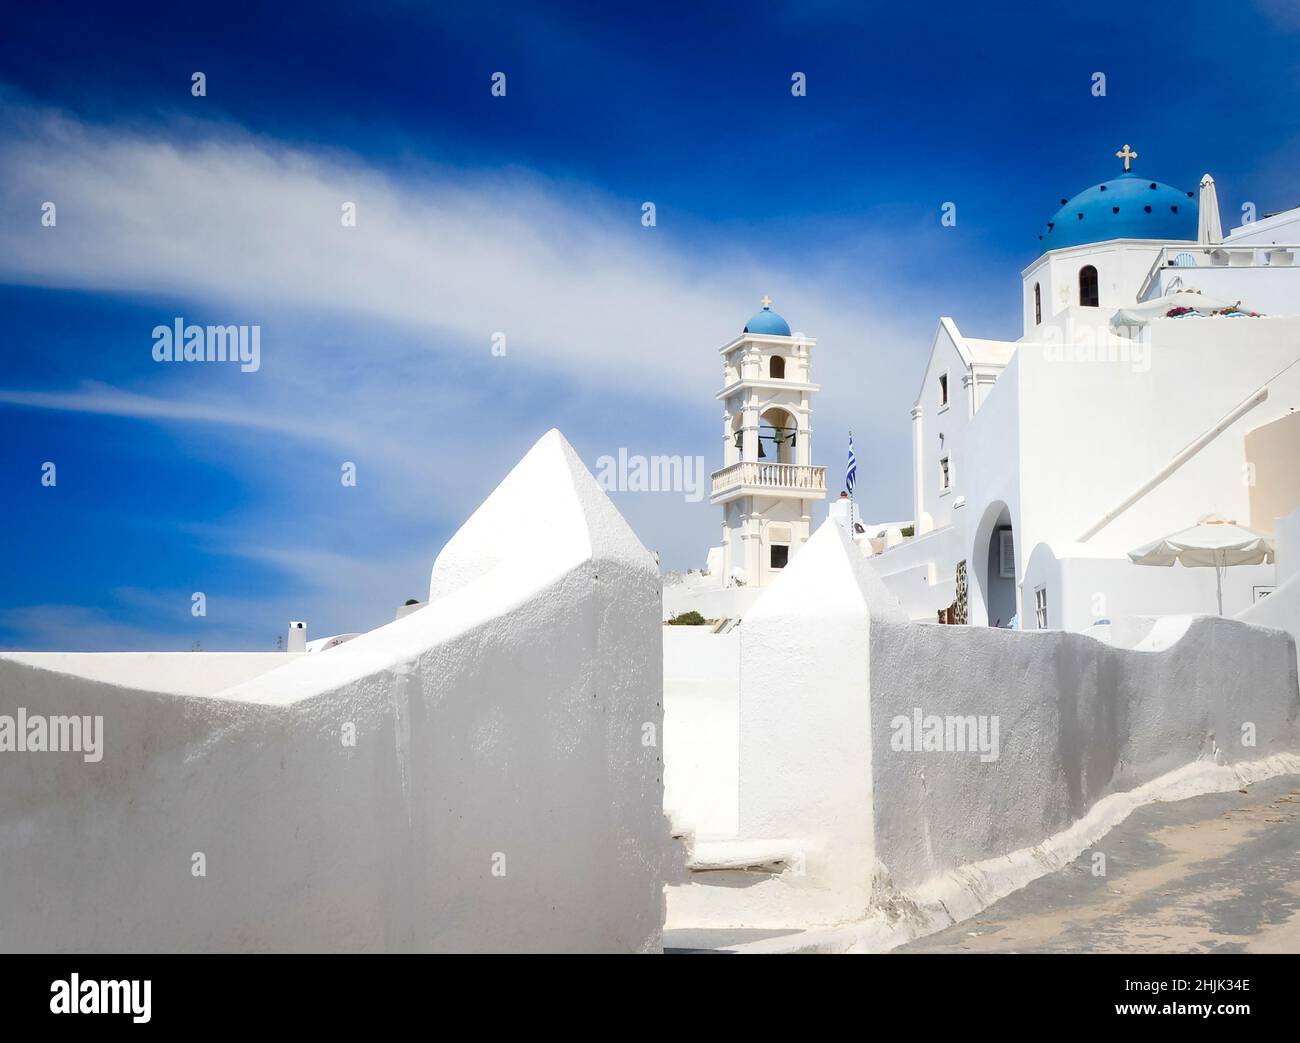 Traditionelle weißgetünchte Kirche, Santorini, Kykladen-Inseln, Griechenland Stockfoto